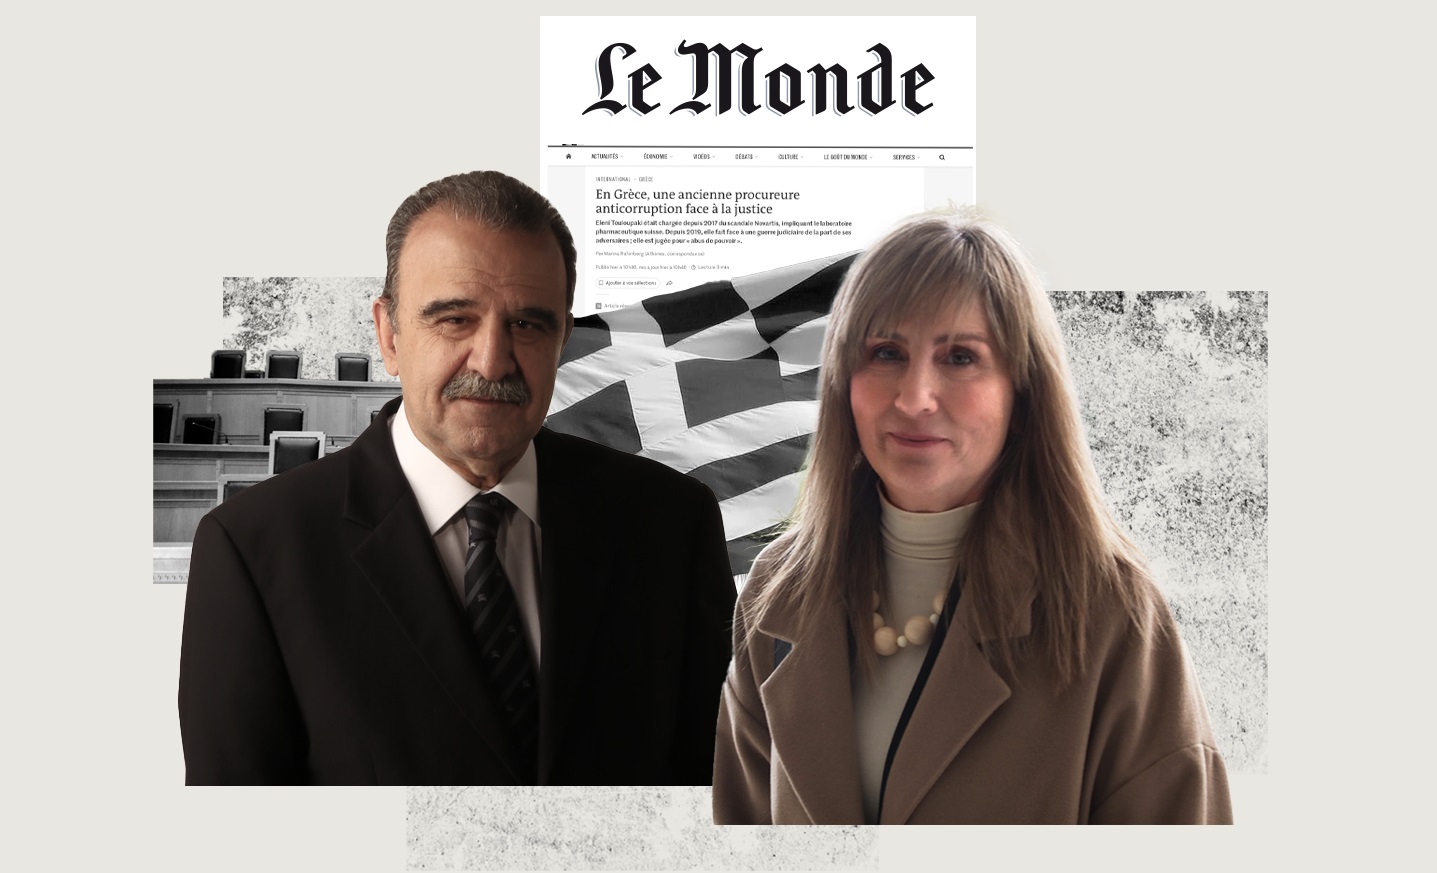 Δήλωση του Γιάννη Μαντζουράνη στη Le Monde: «Στόχος της δίωξης της Ελένης Τουλουπάκη είναι στο μέλλον να μην τολμήσουν να επιτεθούν στους λεγόμενους «άθικτους», δηλαδή στους ισχυρούς του πολιτικού και οικονομικού κόσμου».